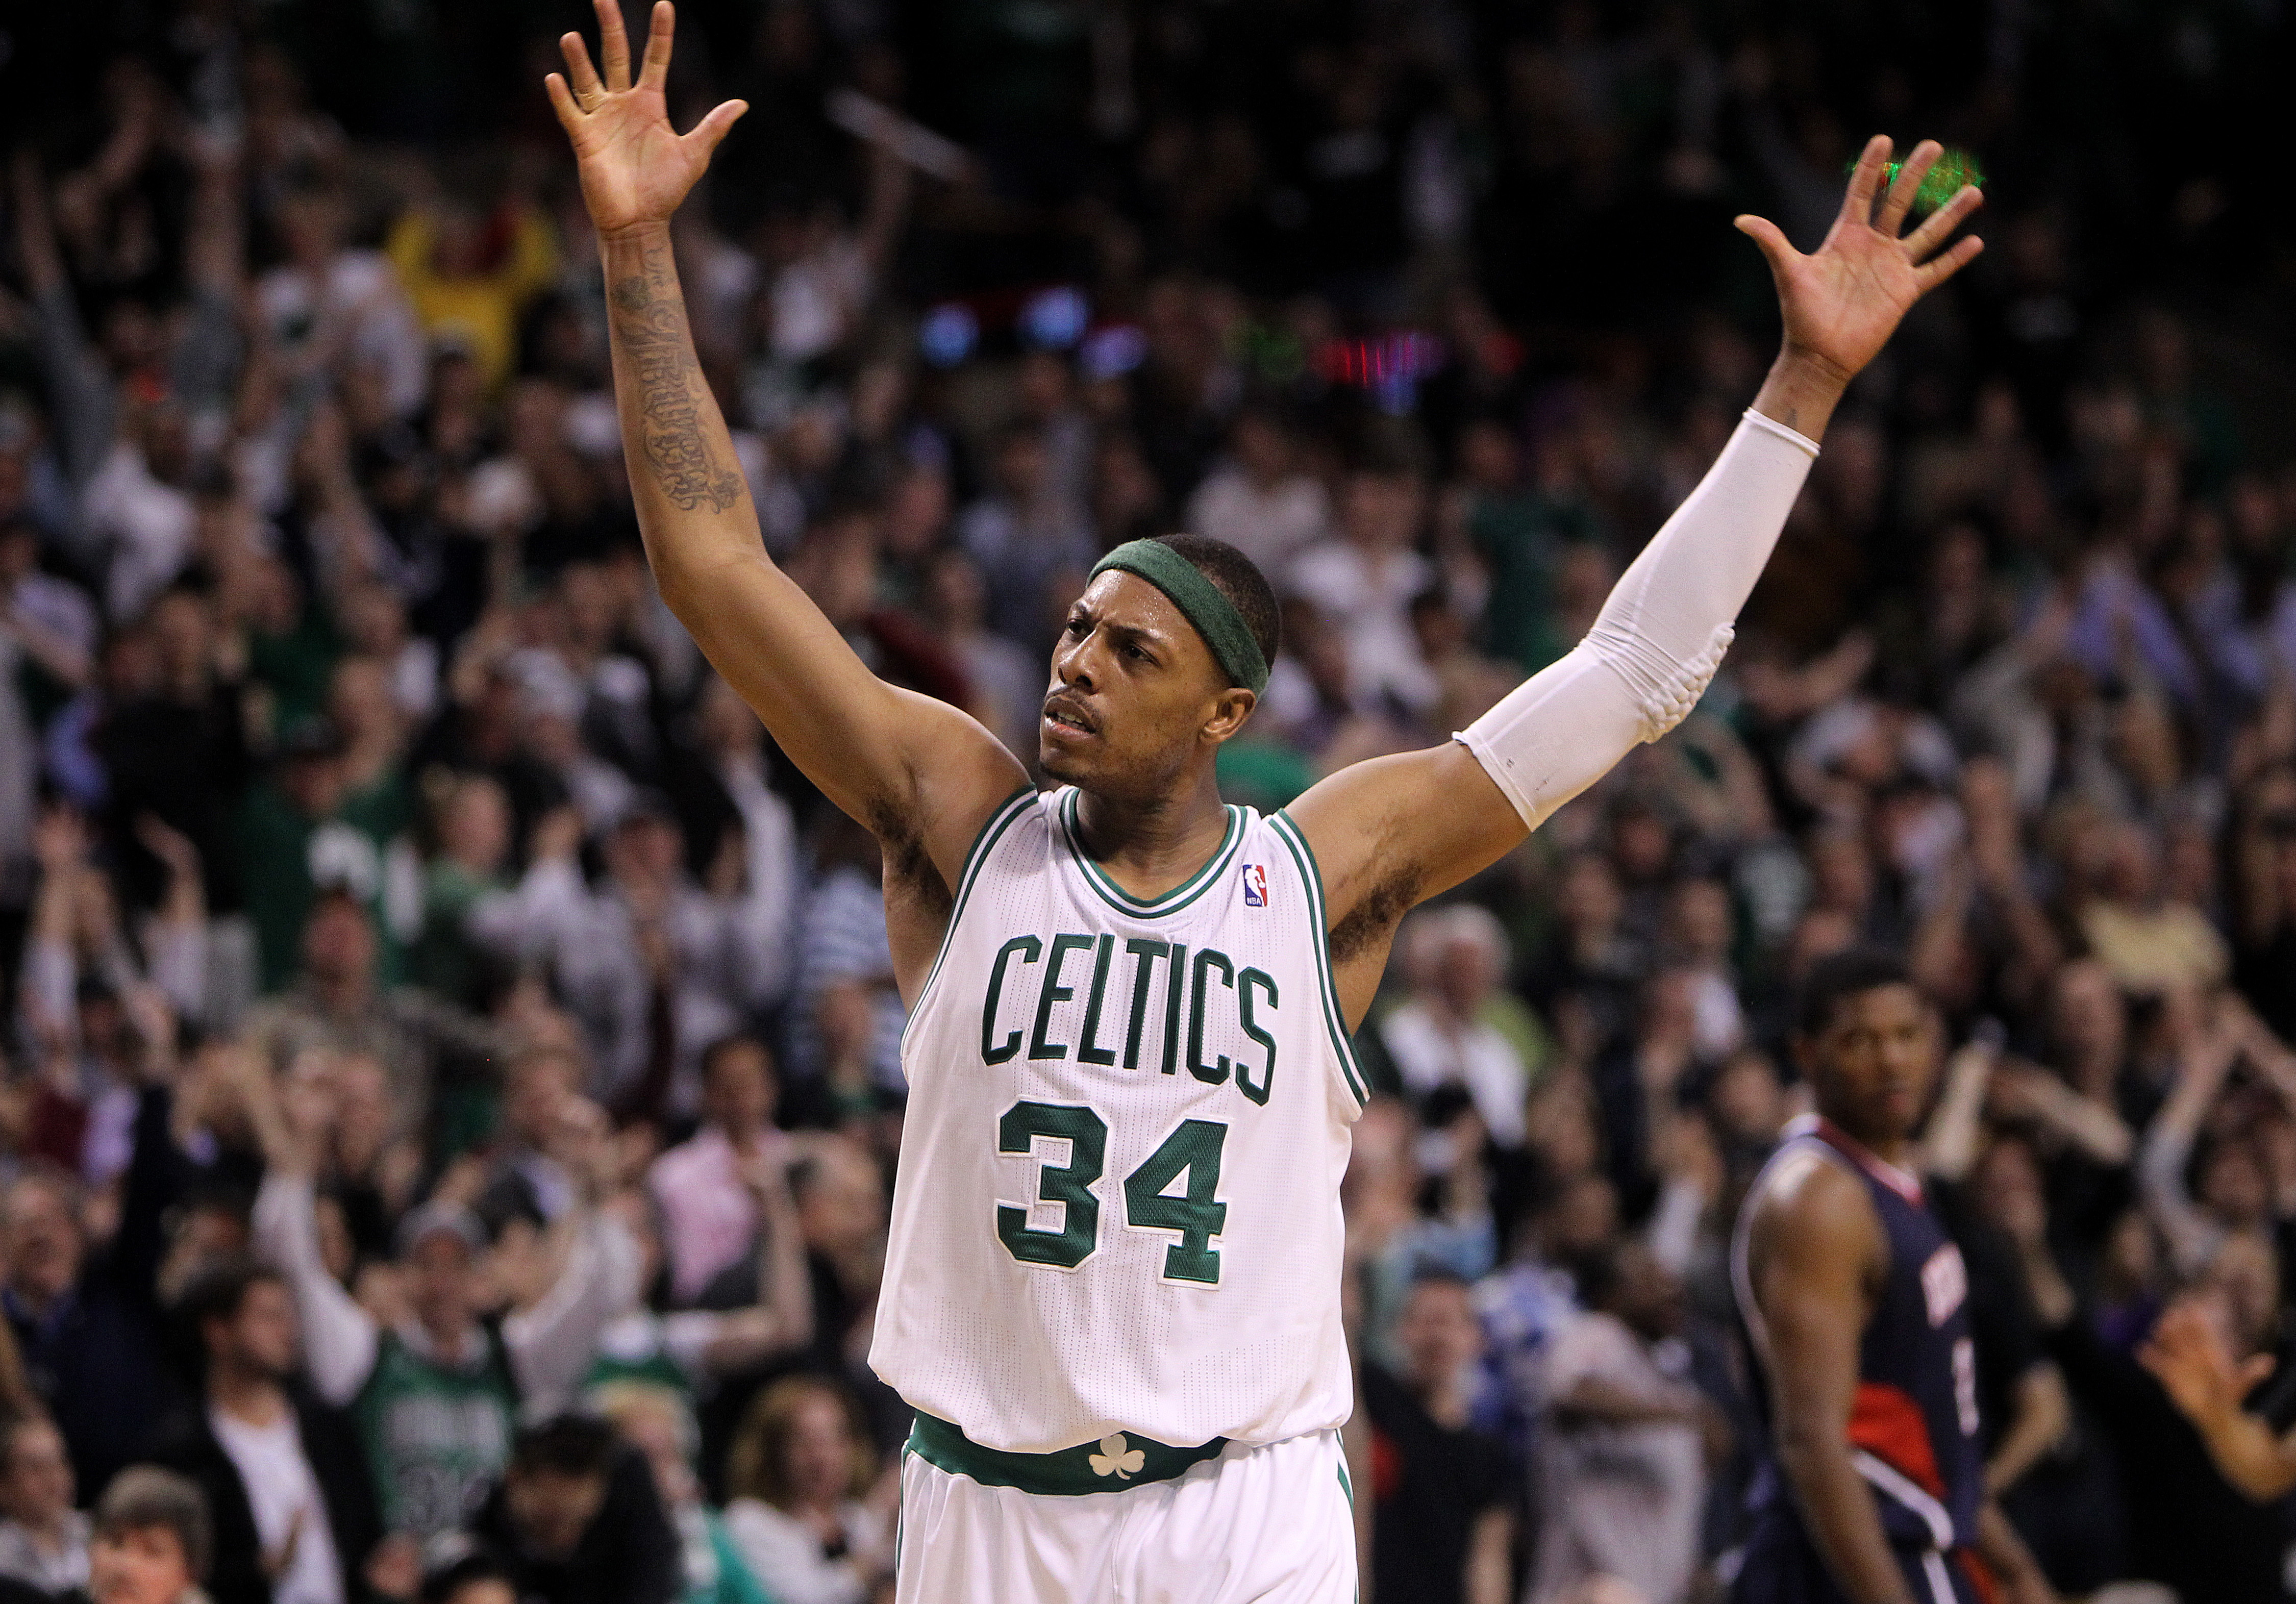 Rocky and remarkable: Celtics great Paul Pierce's unbelievable